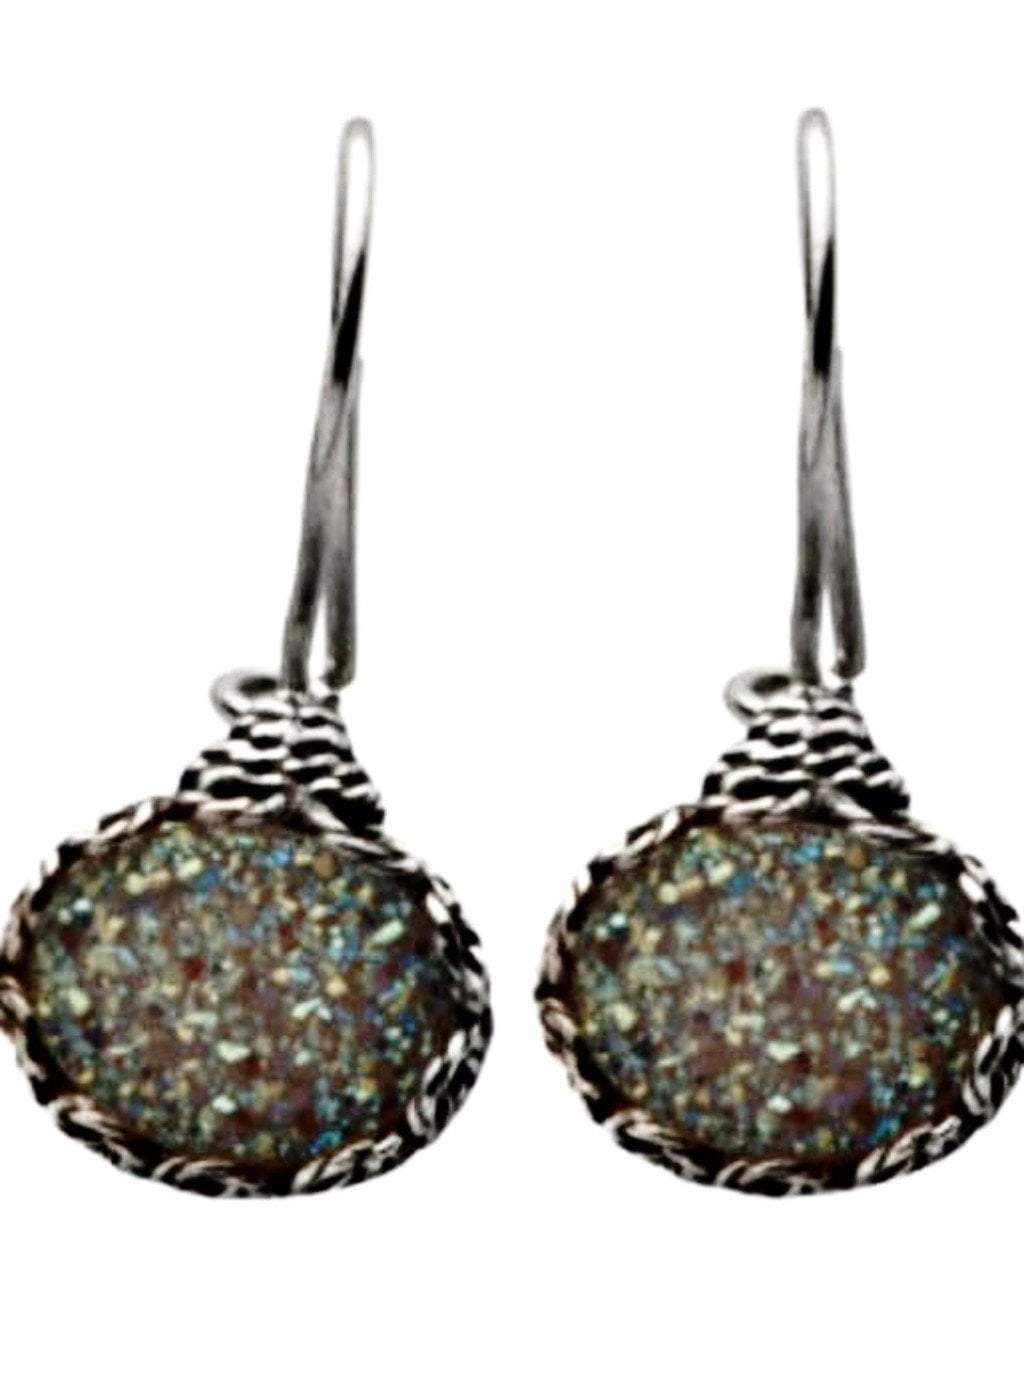 Bluenoemi Jewelry Earrings silver Sterling silver Druze Earrings Dangling Designer Israeli jewelry